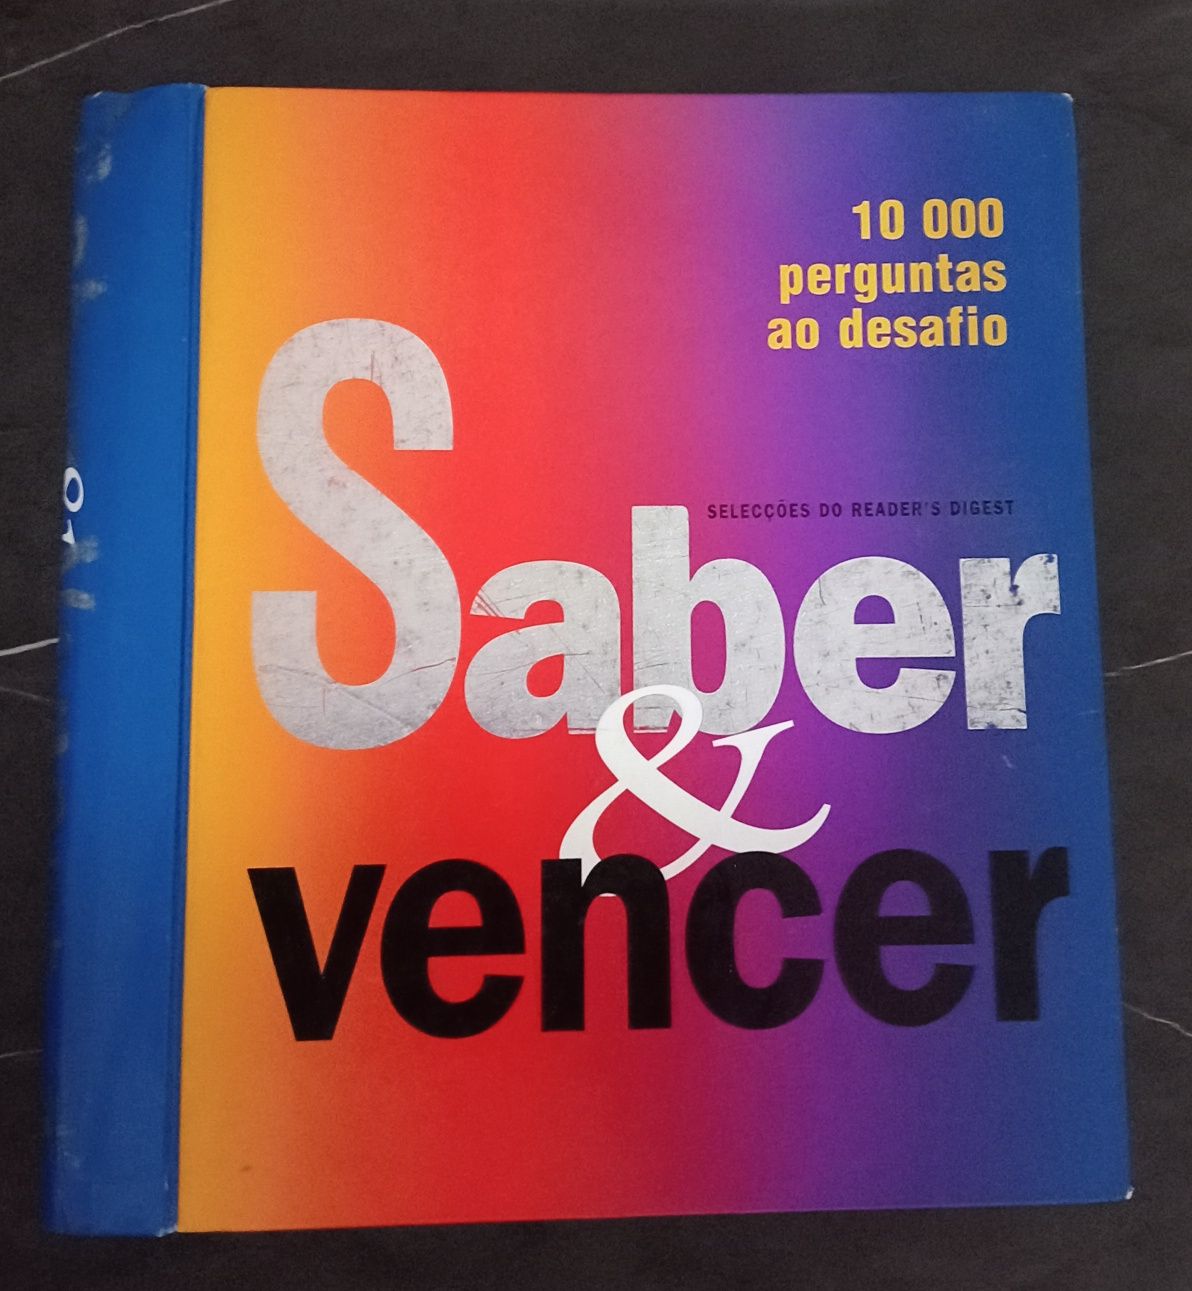 Livro "Saber & Vencer"